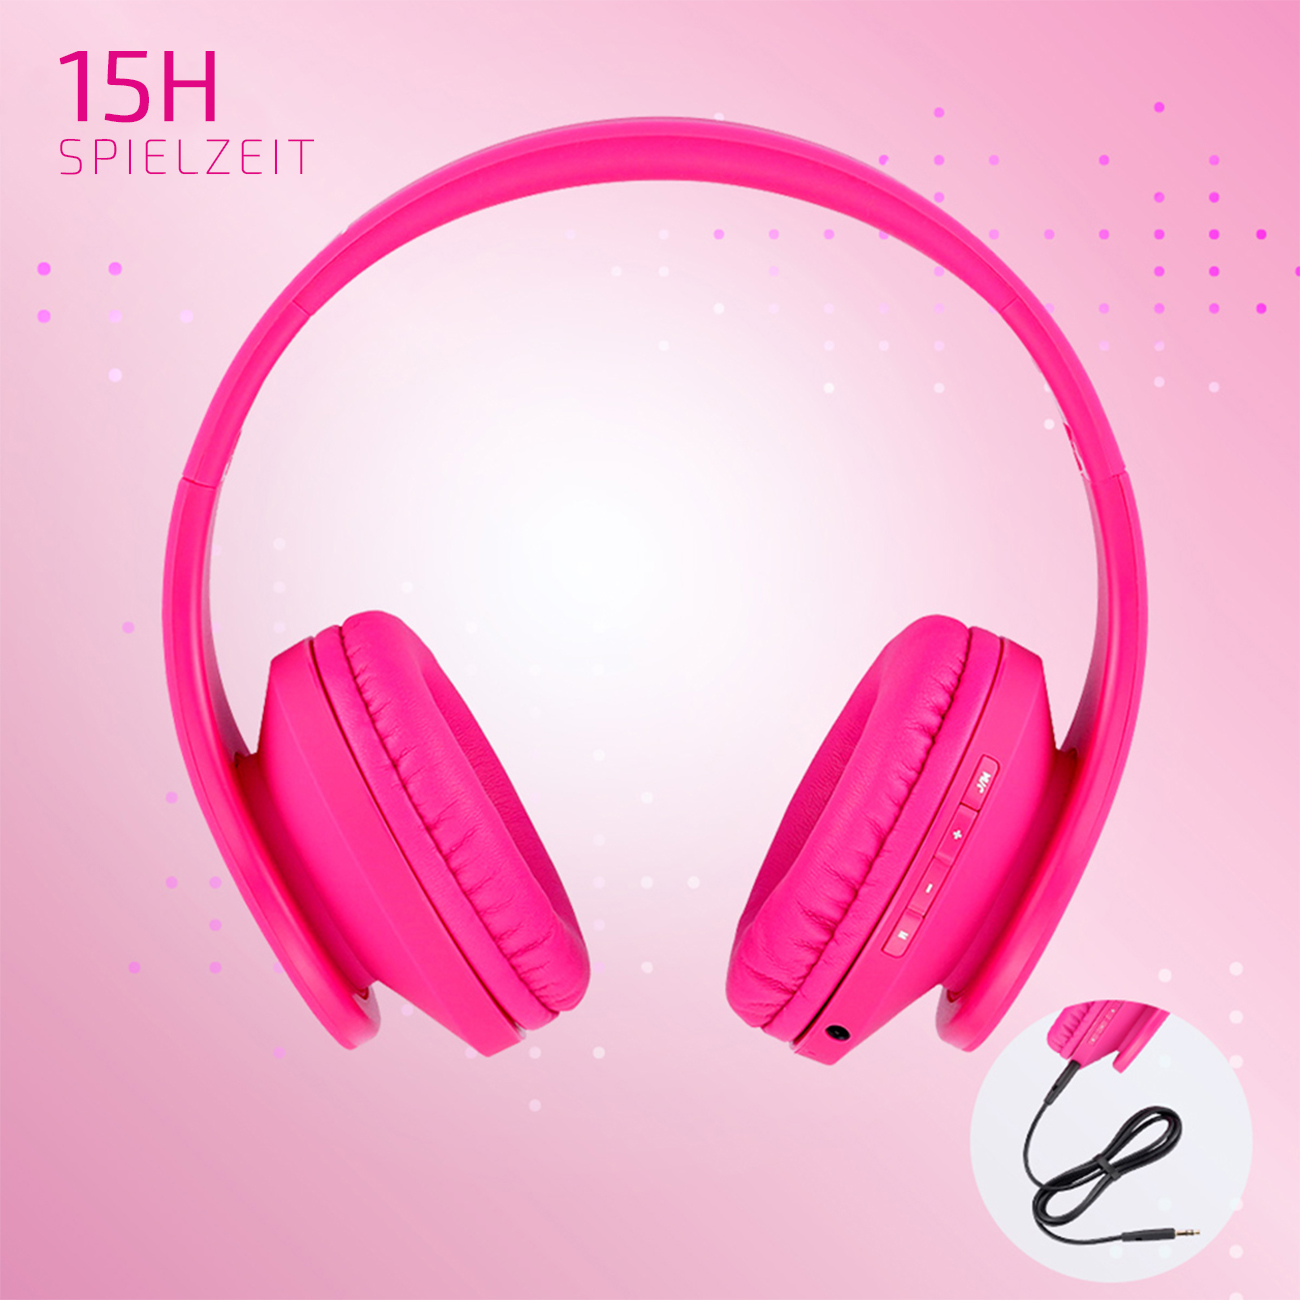 für Over-ear Kinder, Kopfhörer P2 POWERLOCUS Rosa Bluetooth